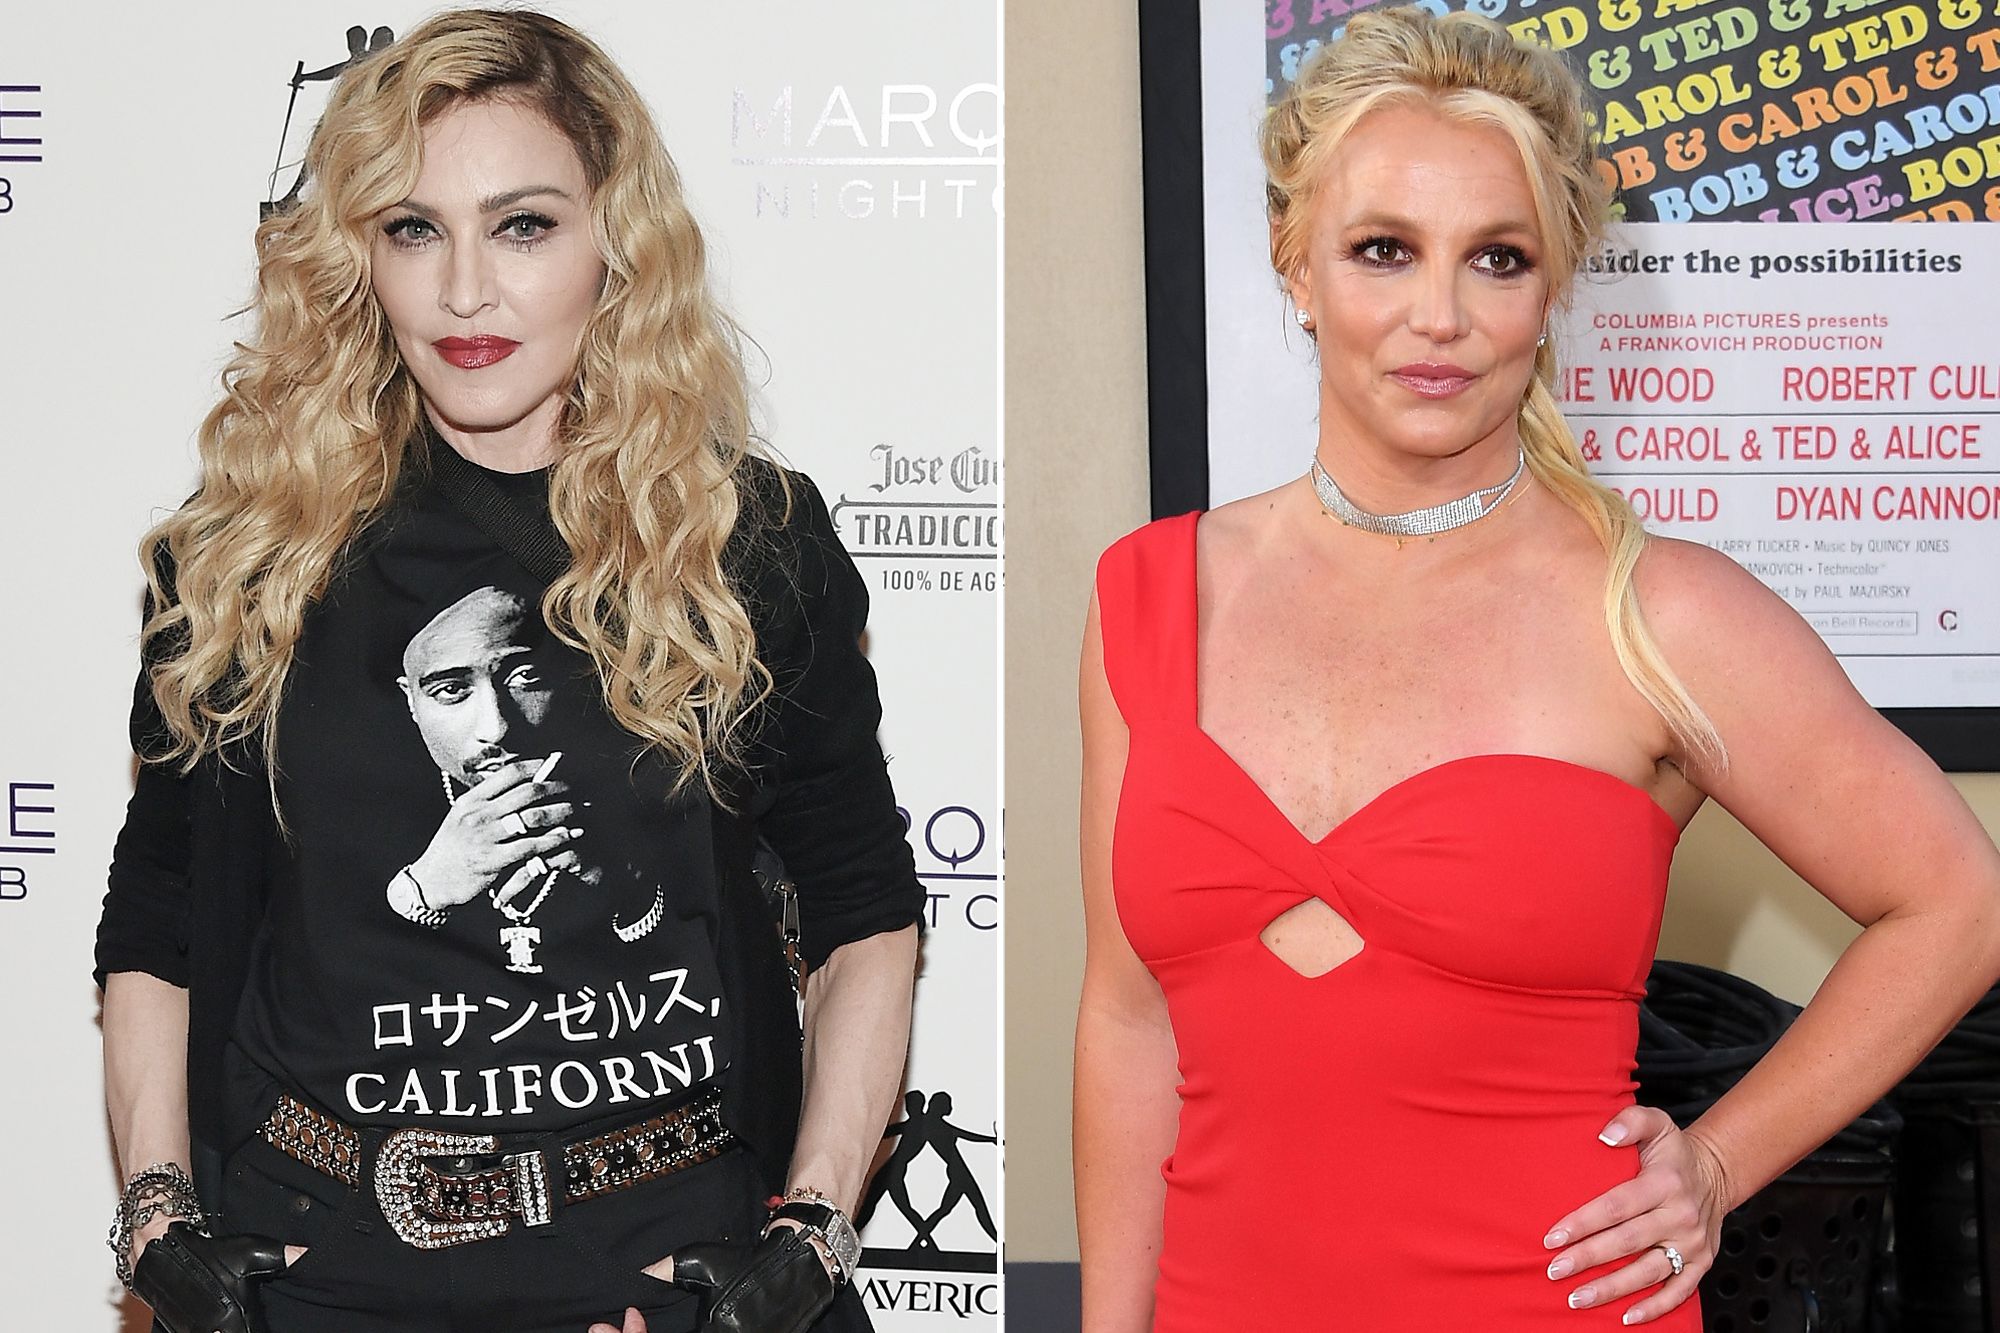 Britney Spears recebeu apoio de Madonna na escolha de advogado, revela site americano